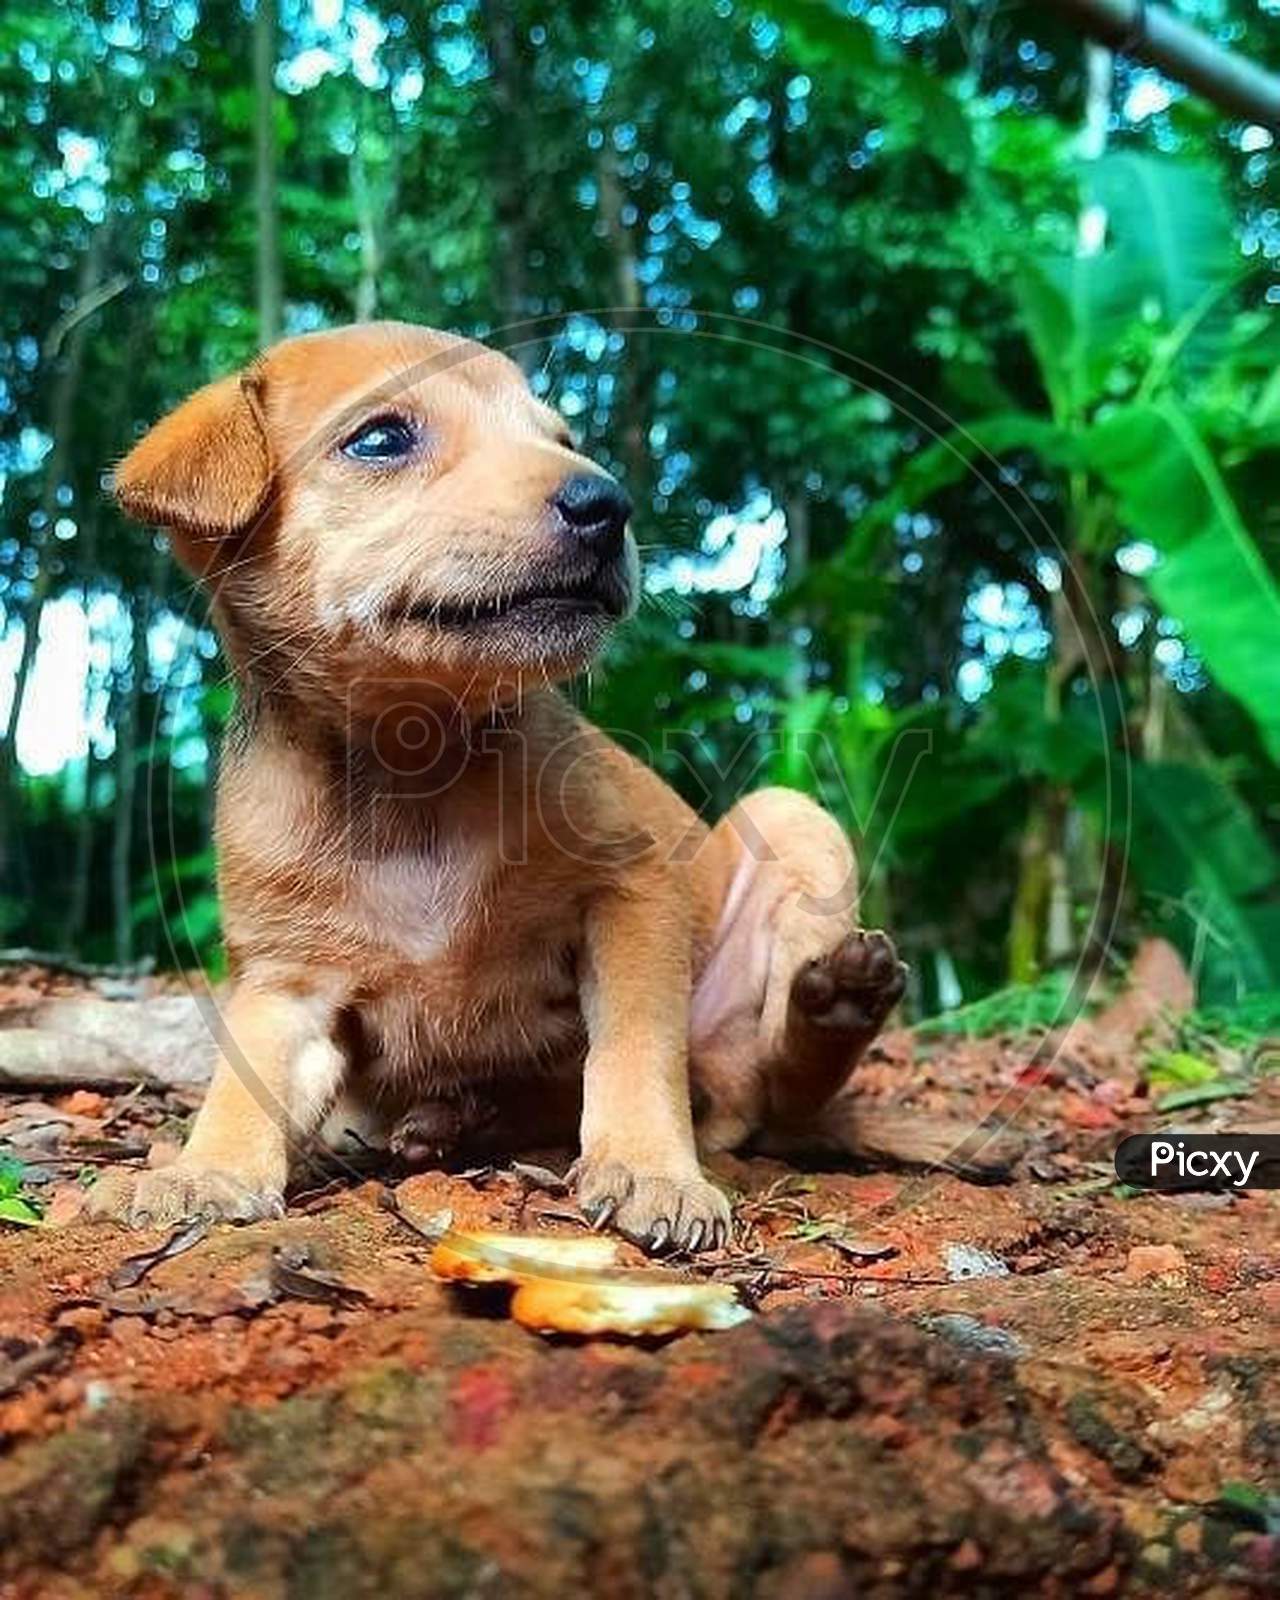 A puppy dog